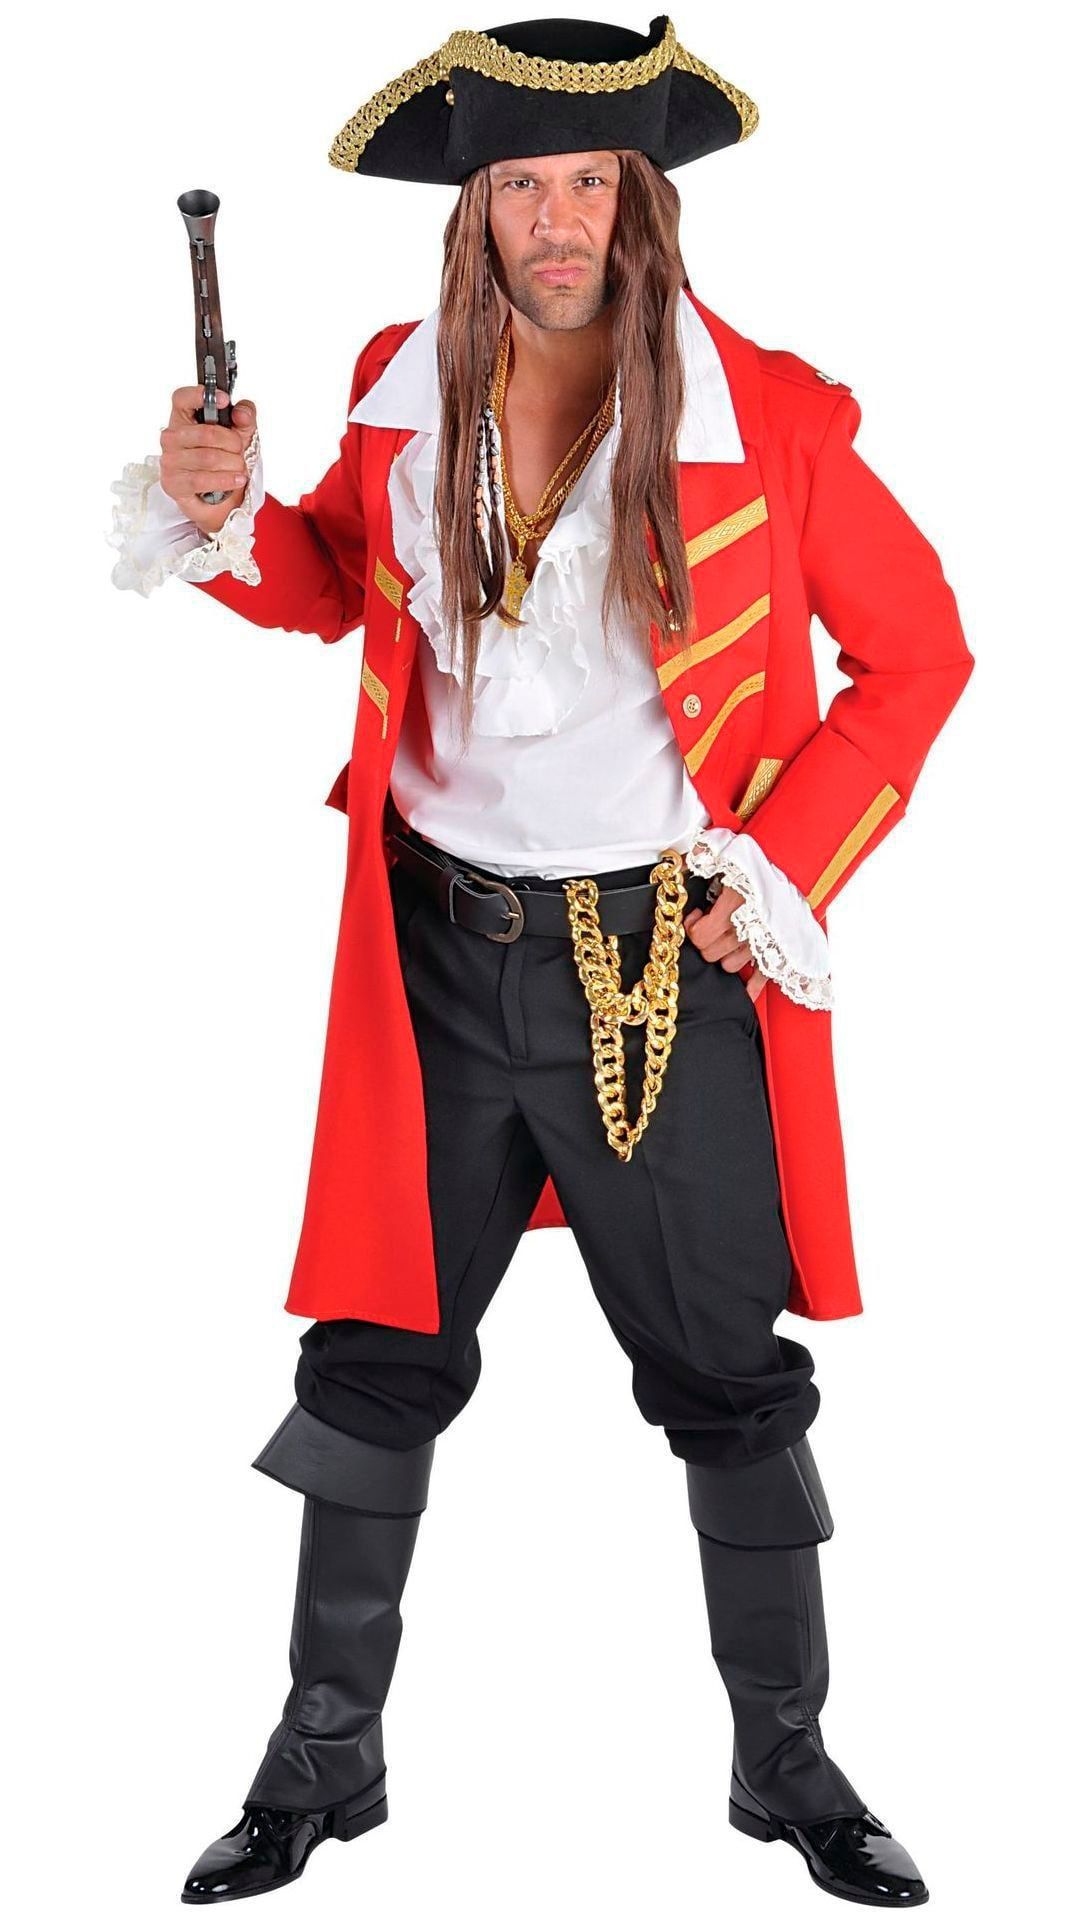 Rode piraten jas mannen